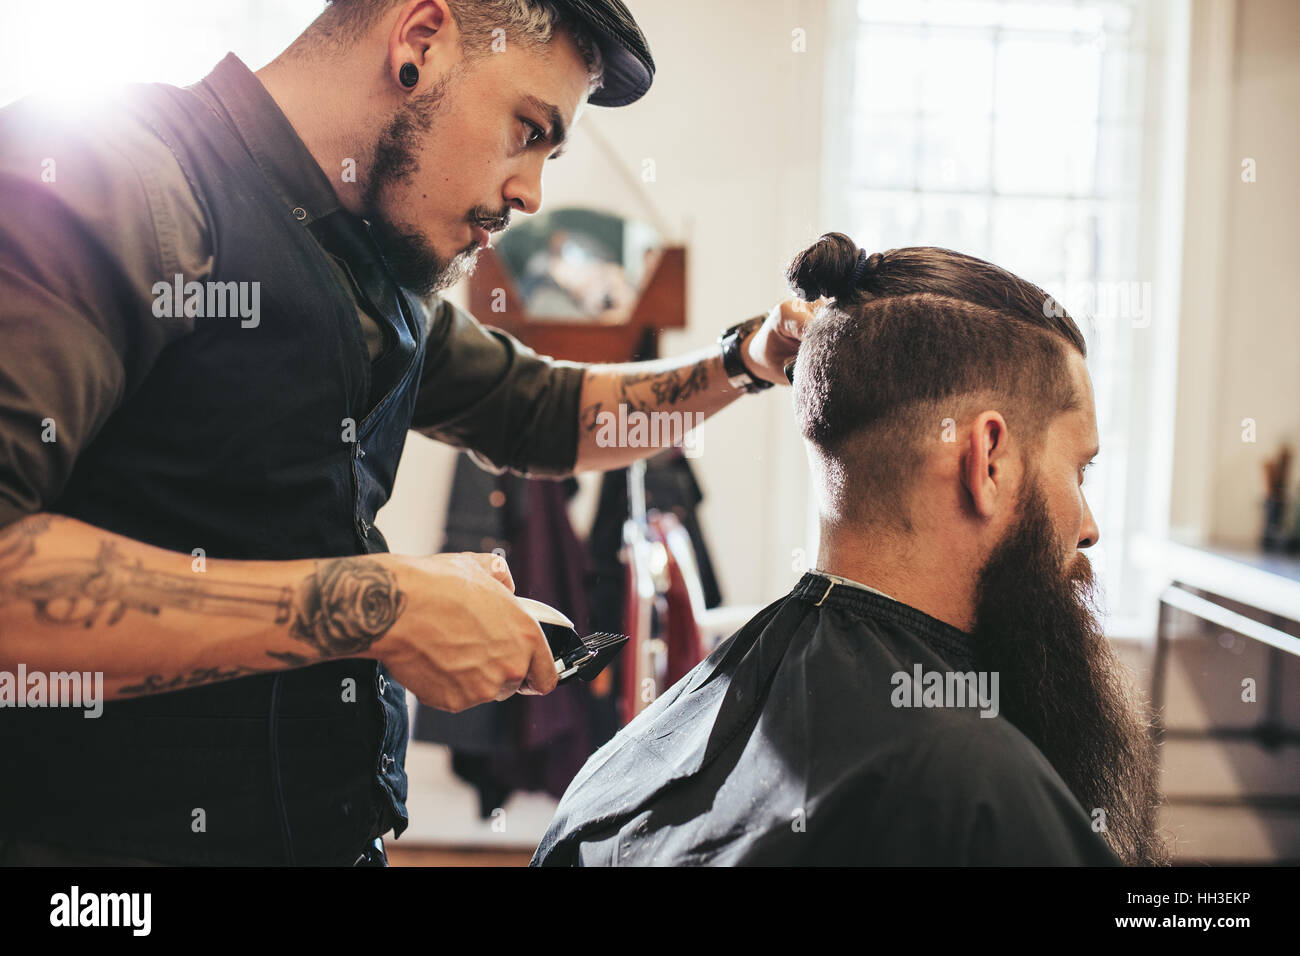 Stilvolle Friseur Haare schneiden des Clients beim Friseur. Bart-Mann immer Haarschnitt im Salon. Stockfoto